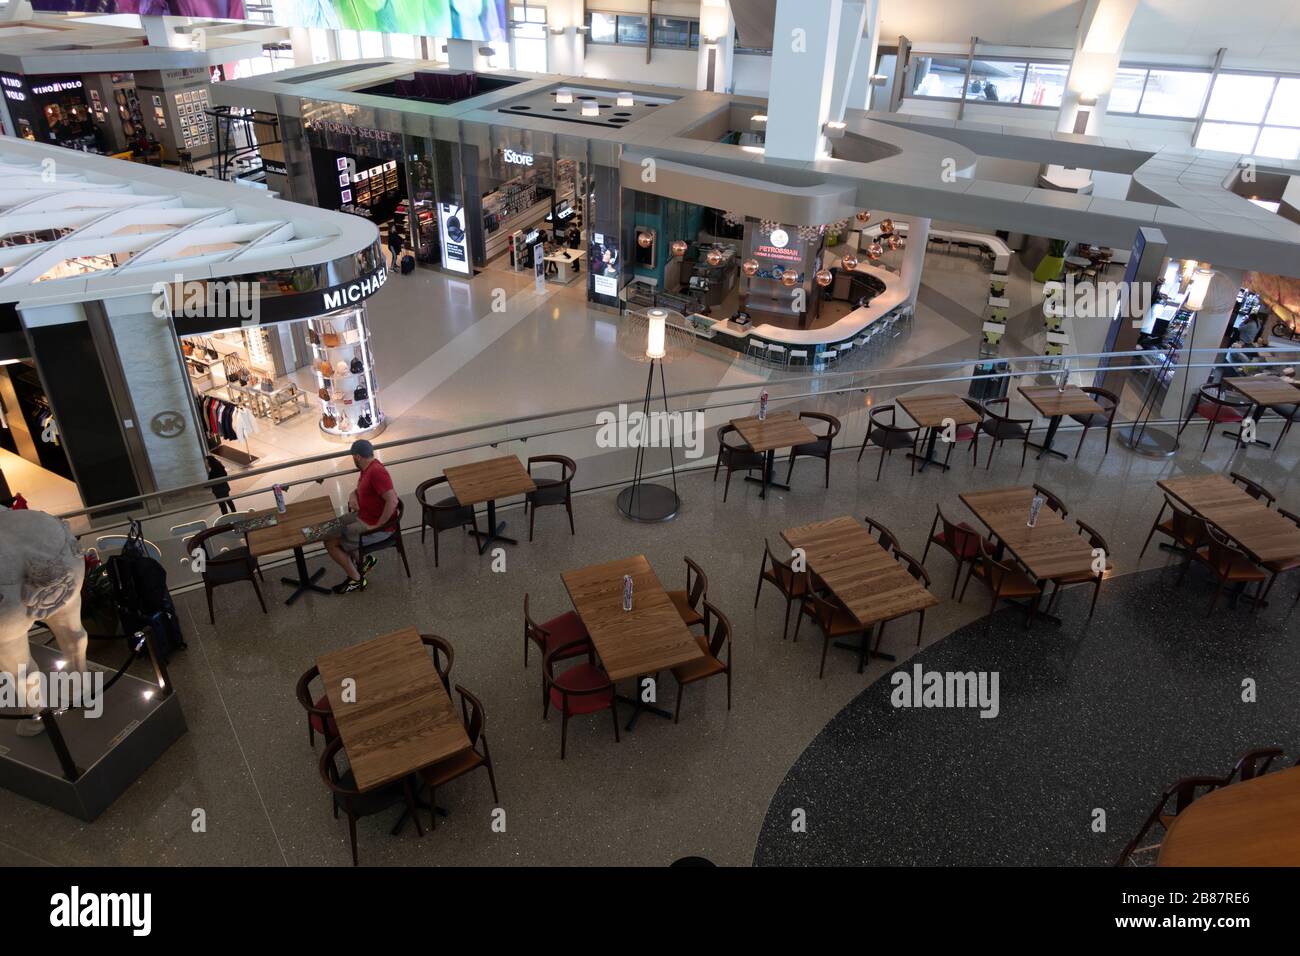 À l'intérieur d'un terminal international vide Tom Bradley à l'aéroport de Los Angeles LAX pendant la crise pandémique COVID-19 Californie États-Unis Banque D'Images